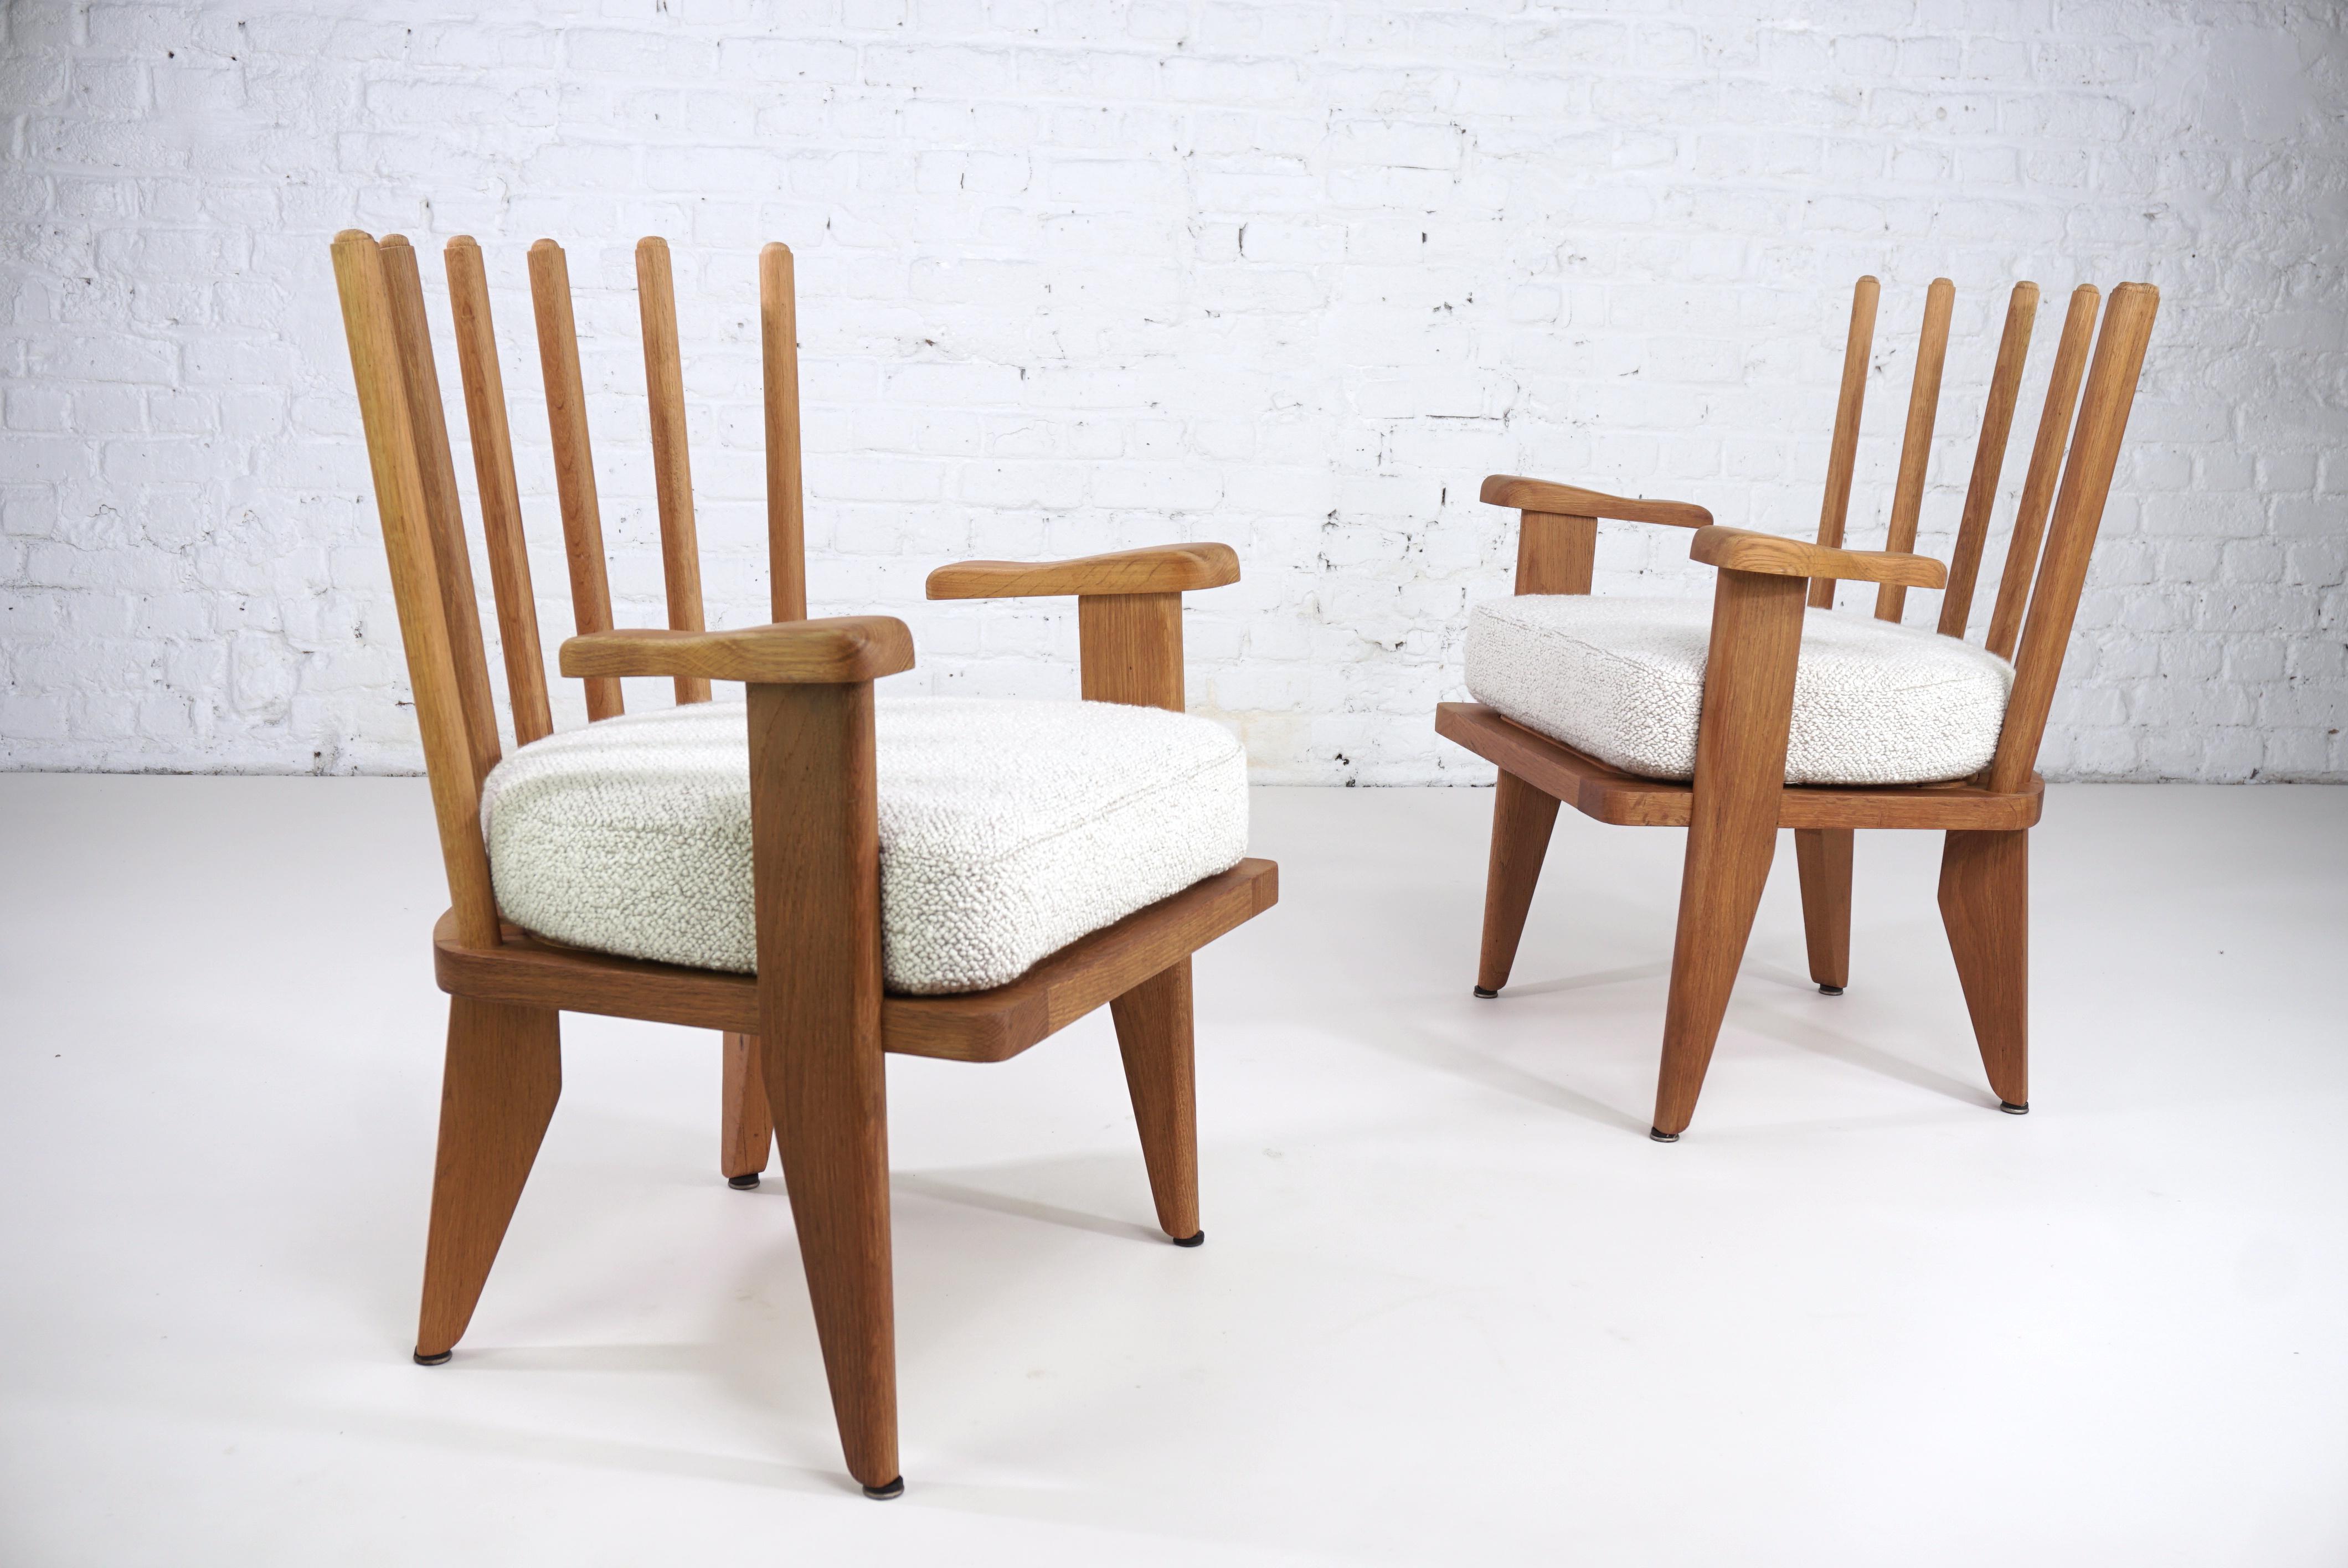 Ikonisches französisches Sesselpaar von Guillerme & Chambron aus den 1960er Jahren, hergestellt aus massivem Eichenholz und neu gepolstert mit einem hochwertigen Pierre Frey Bouclé Stoff.